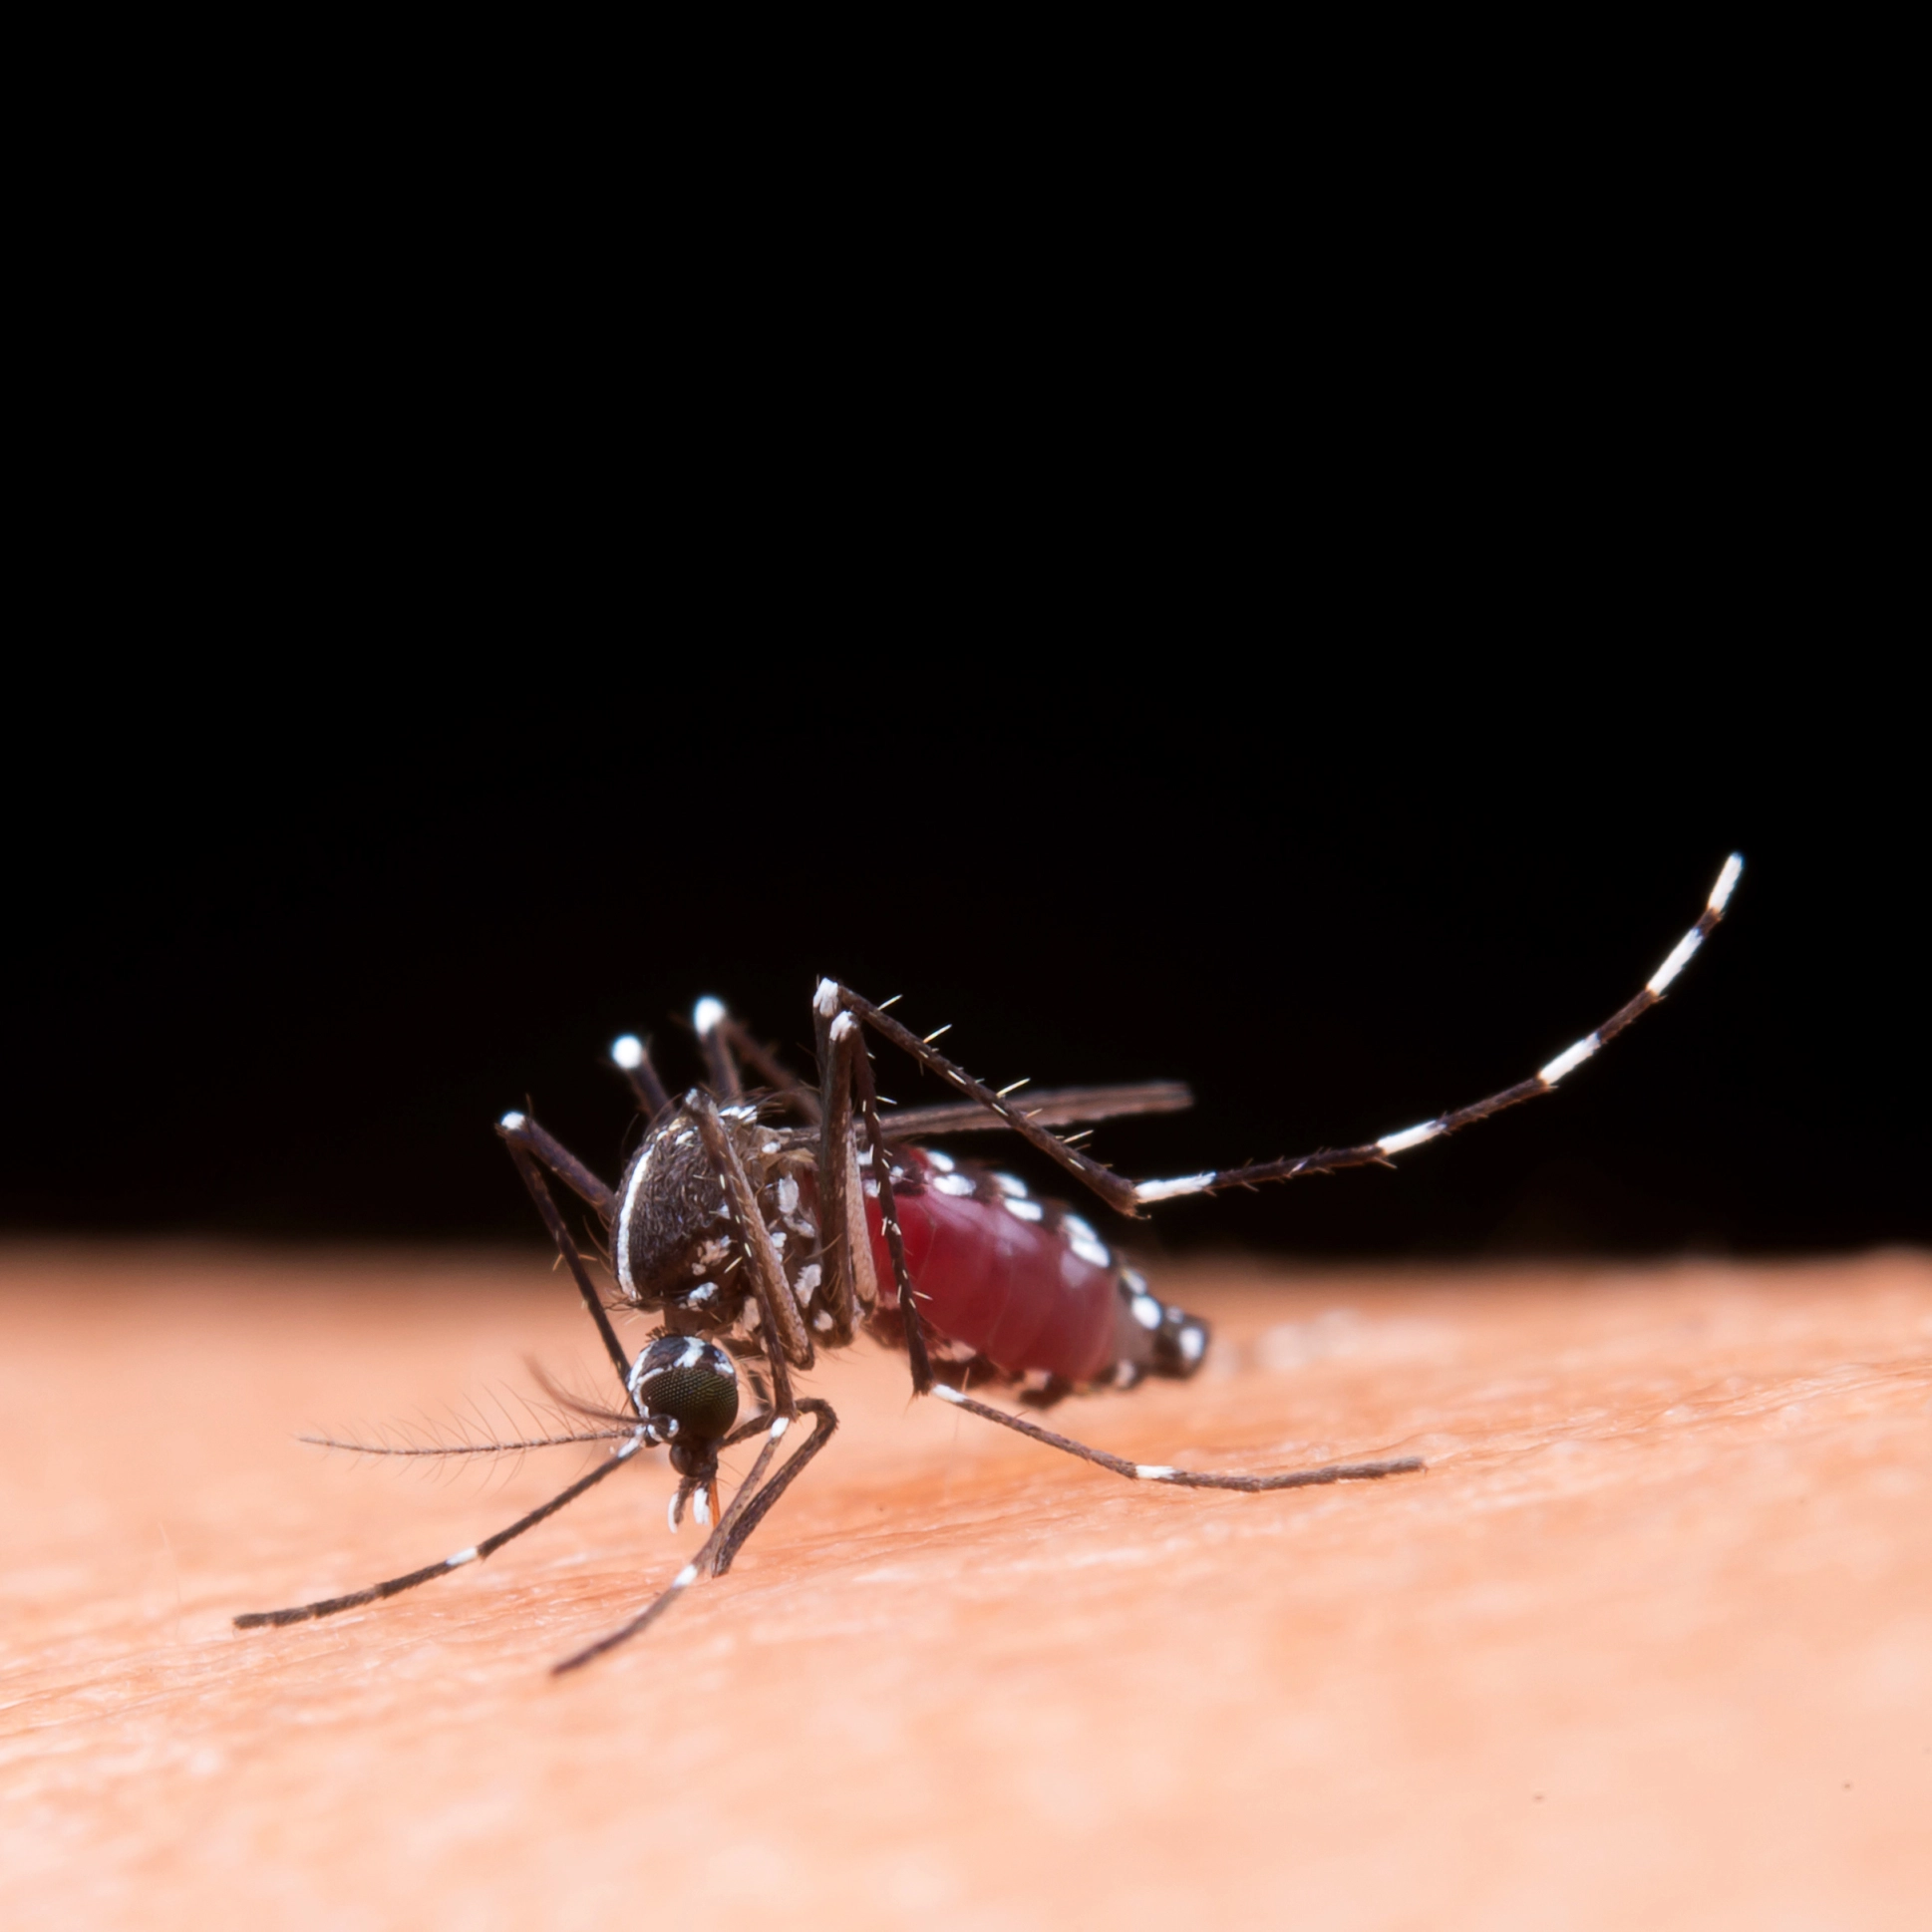 Surto de dengue pode ser o pior da história nas Américas, segundo Opas